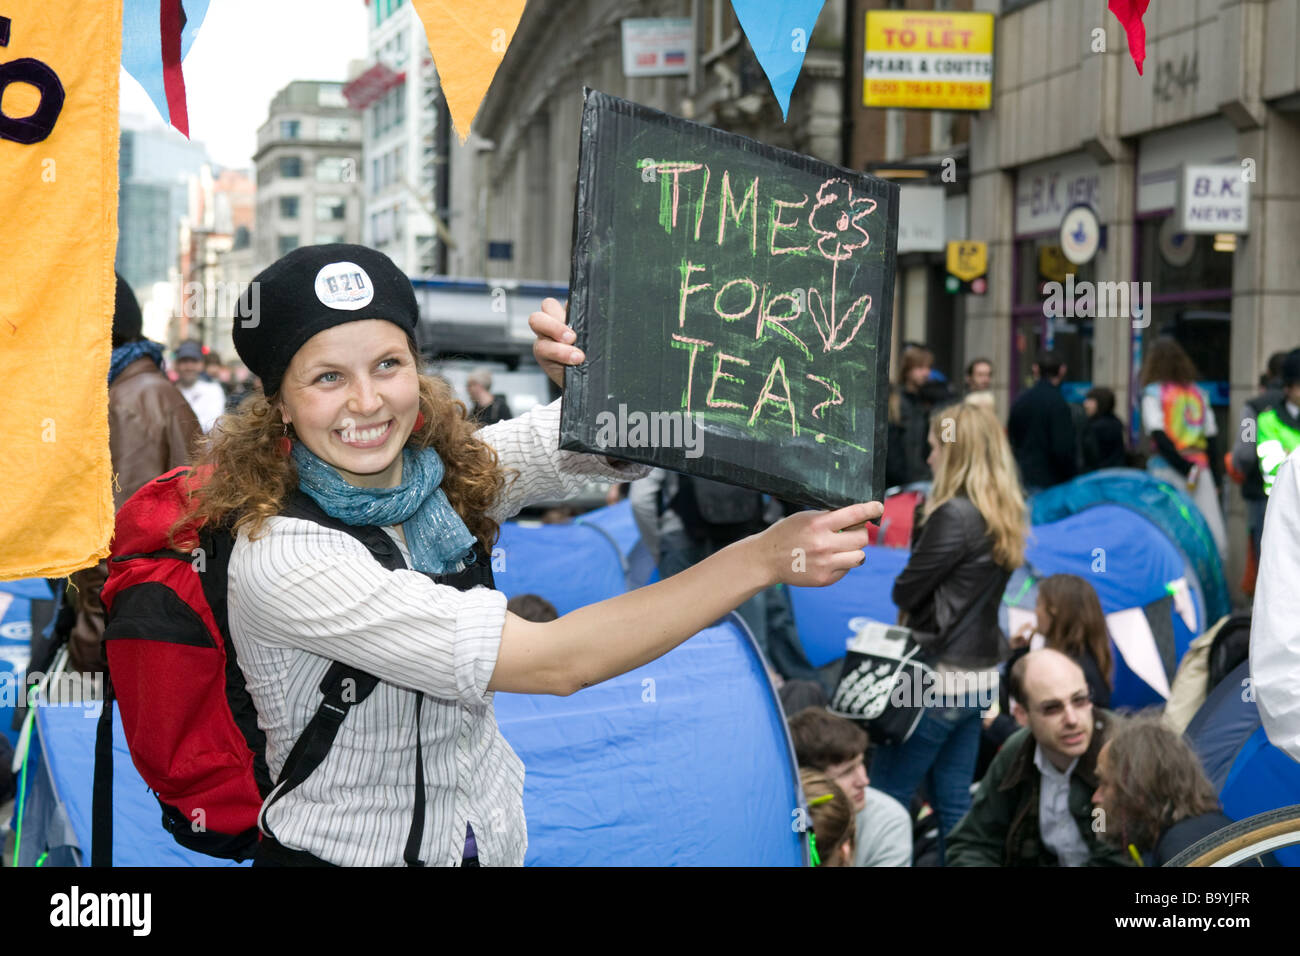 London - G20-Proteste. Friedlicher Protest gegen Klima-Camp in Bishopsgate eingerichtet wurde. Stockfoto